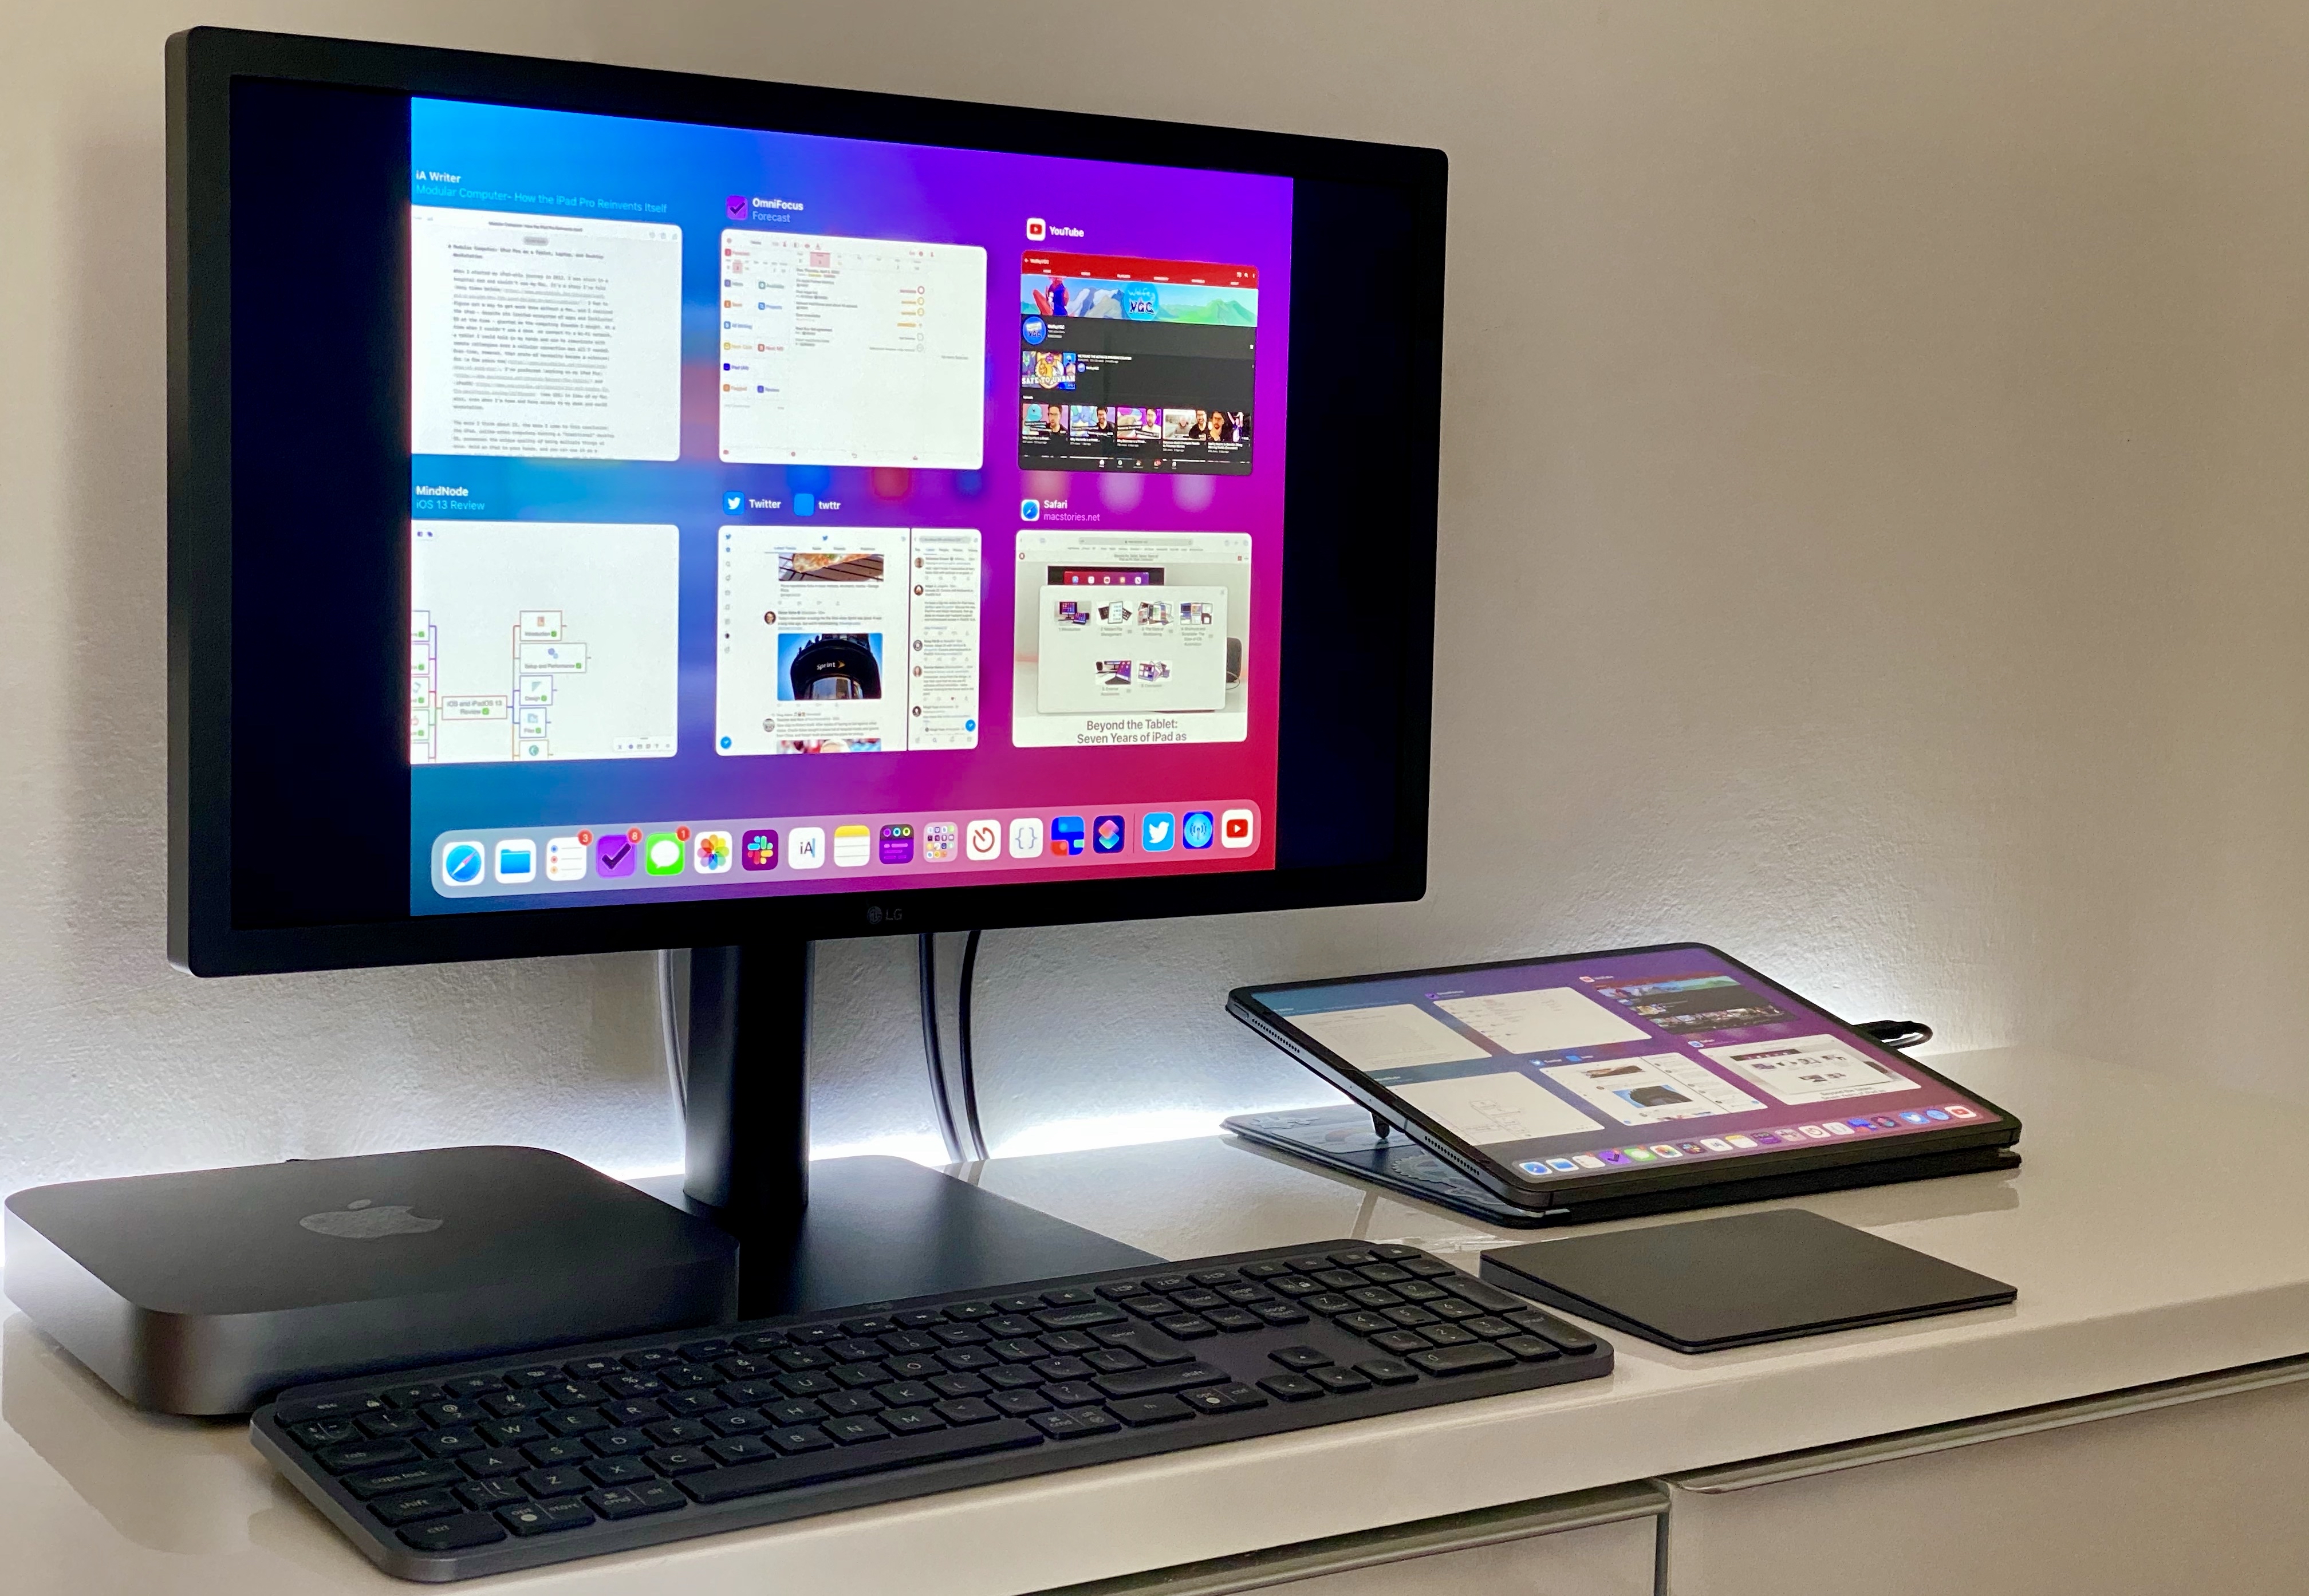 Modular Computer: iPad Pro as a Tablet, Laptop, and Desktop Workstation